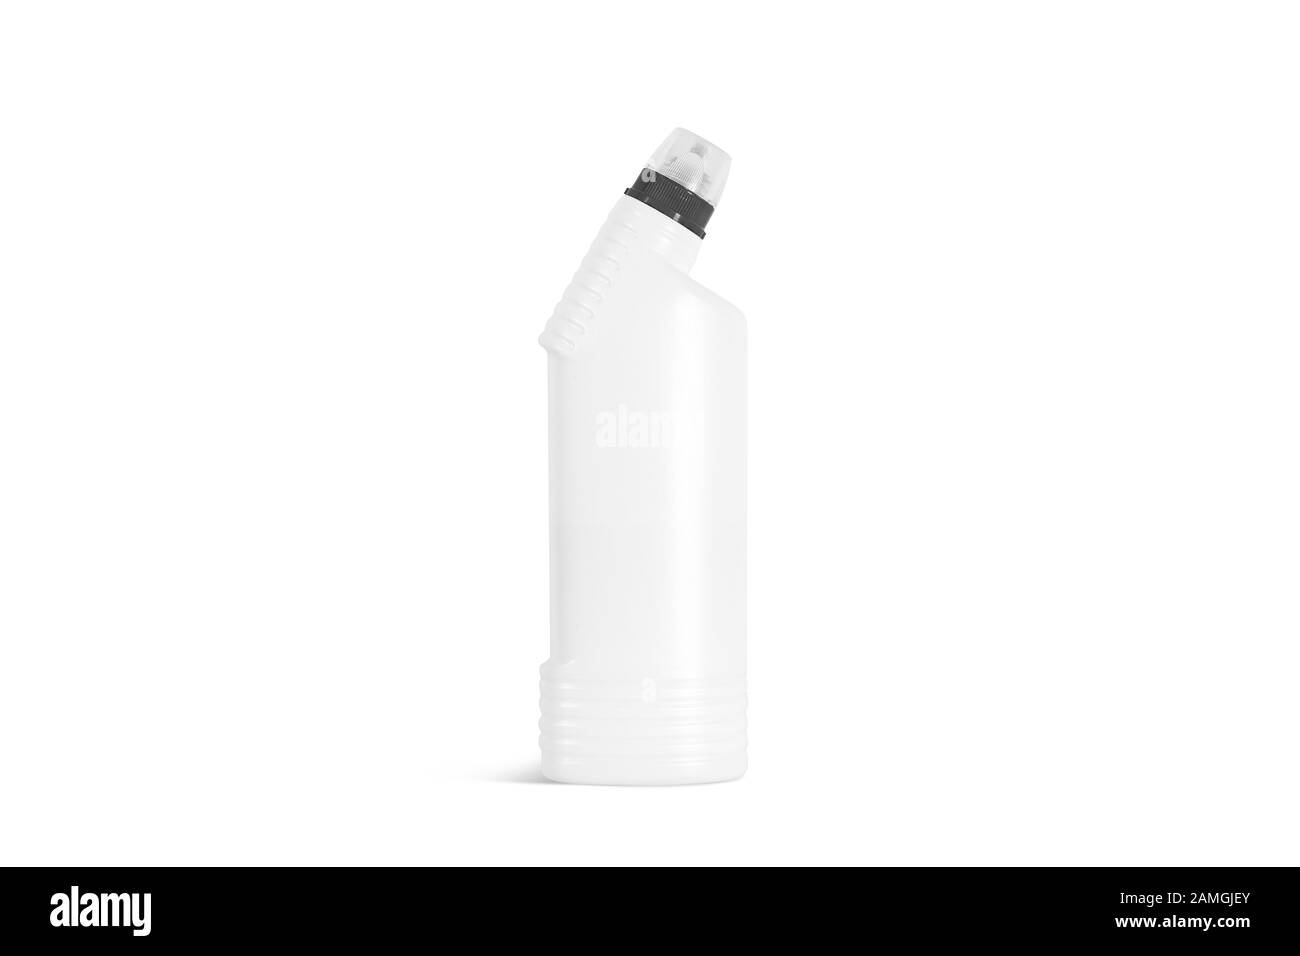 La botella de detergente blanco se mofa, vista frontal Foto de stock